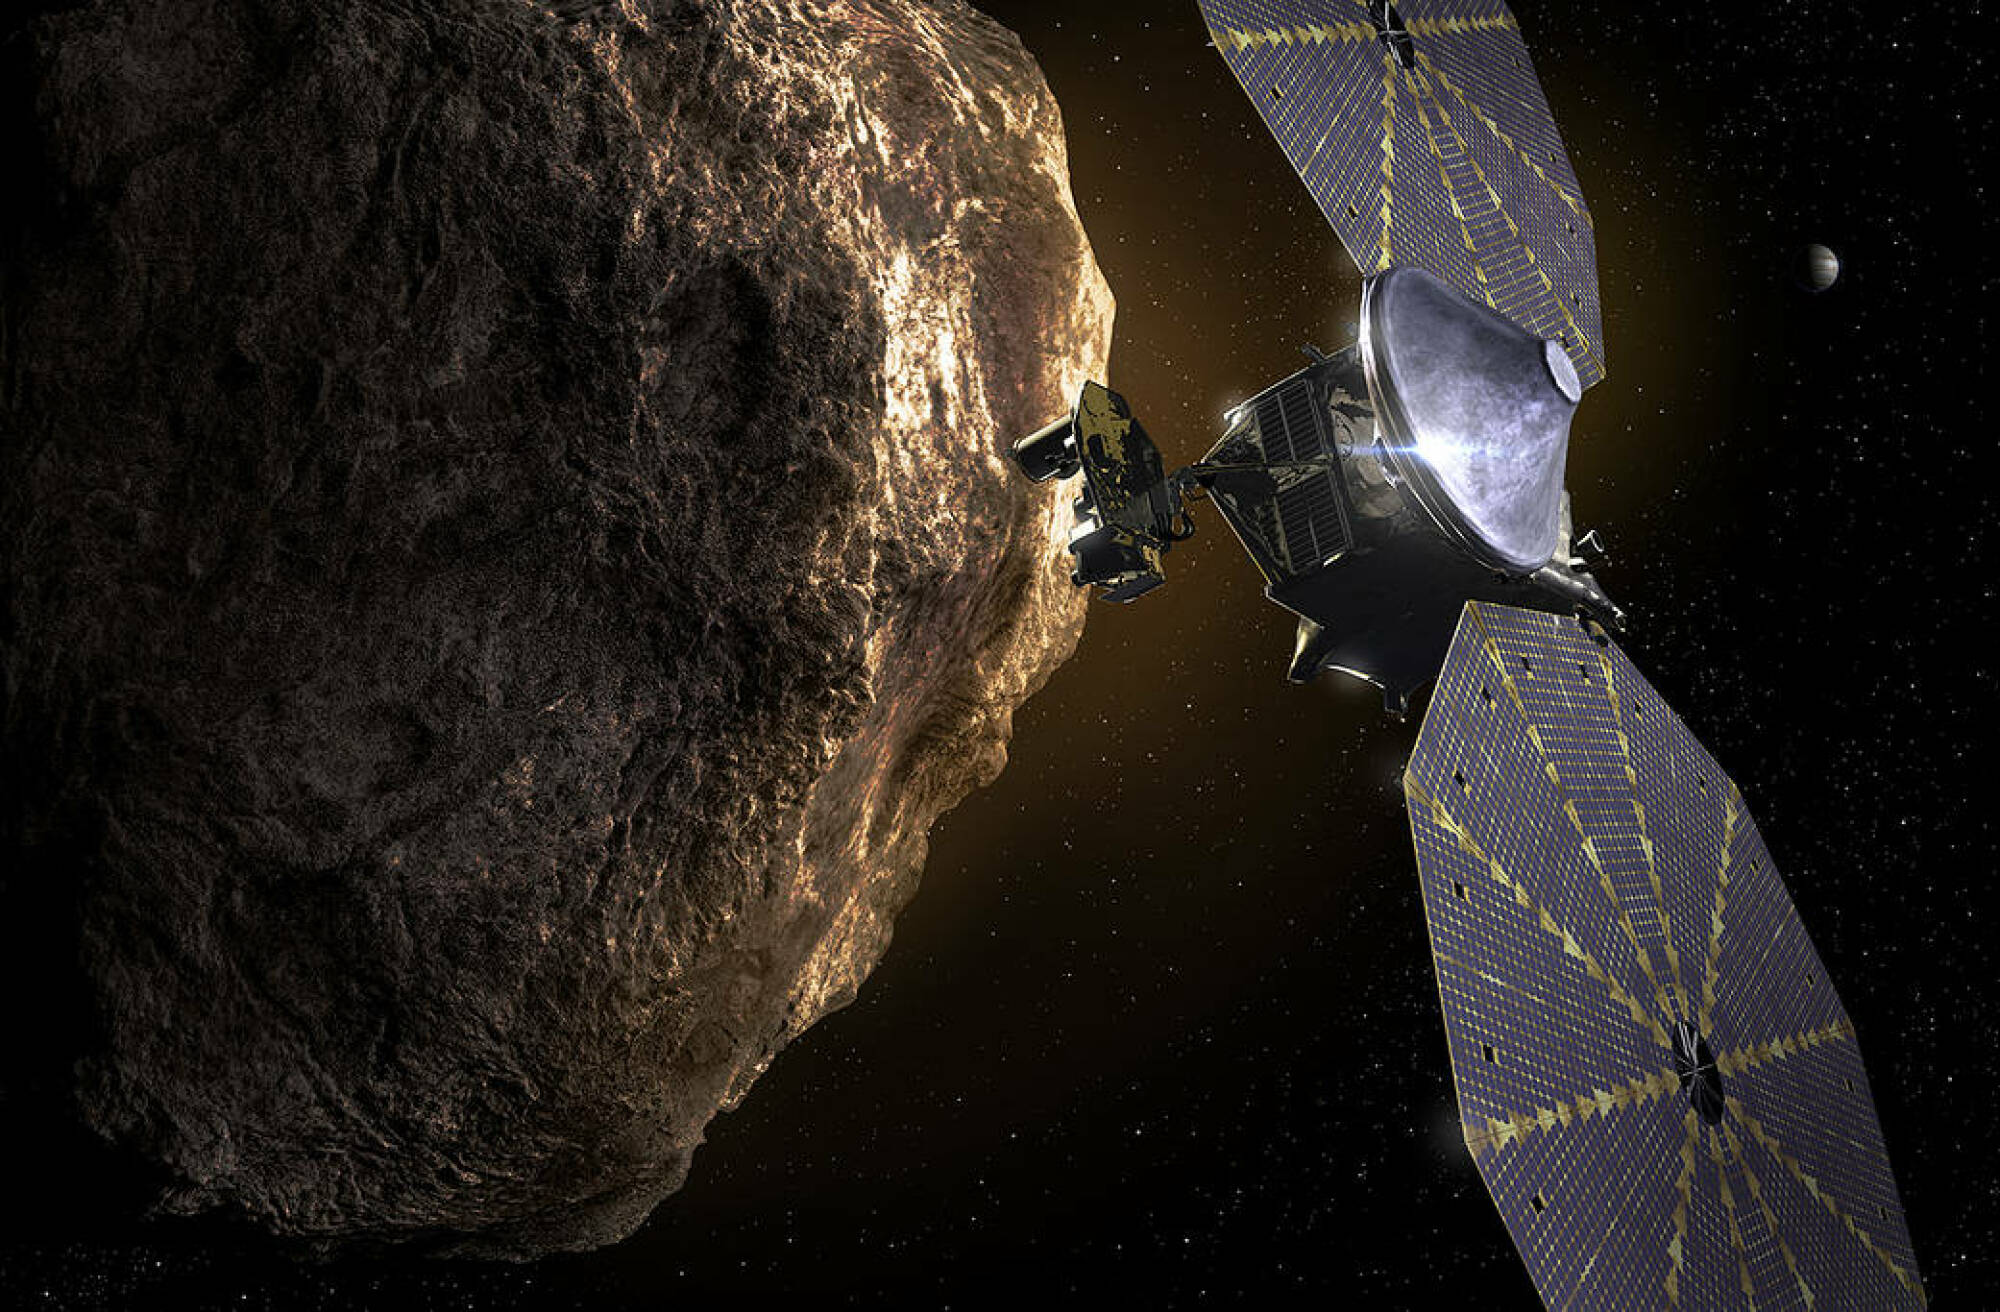 le vaisseau spatial Lucy passant devant un astéroïde